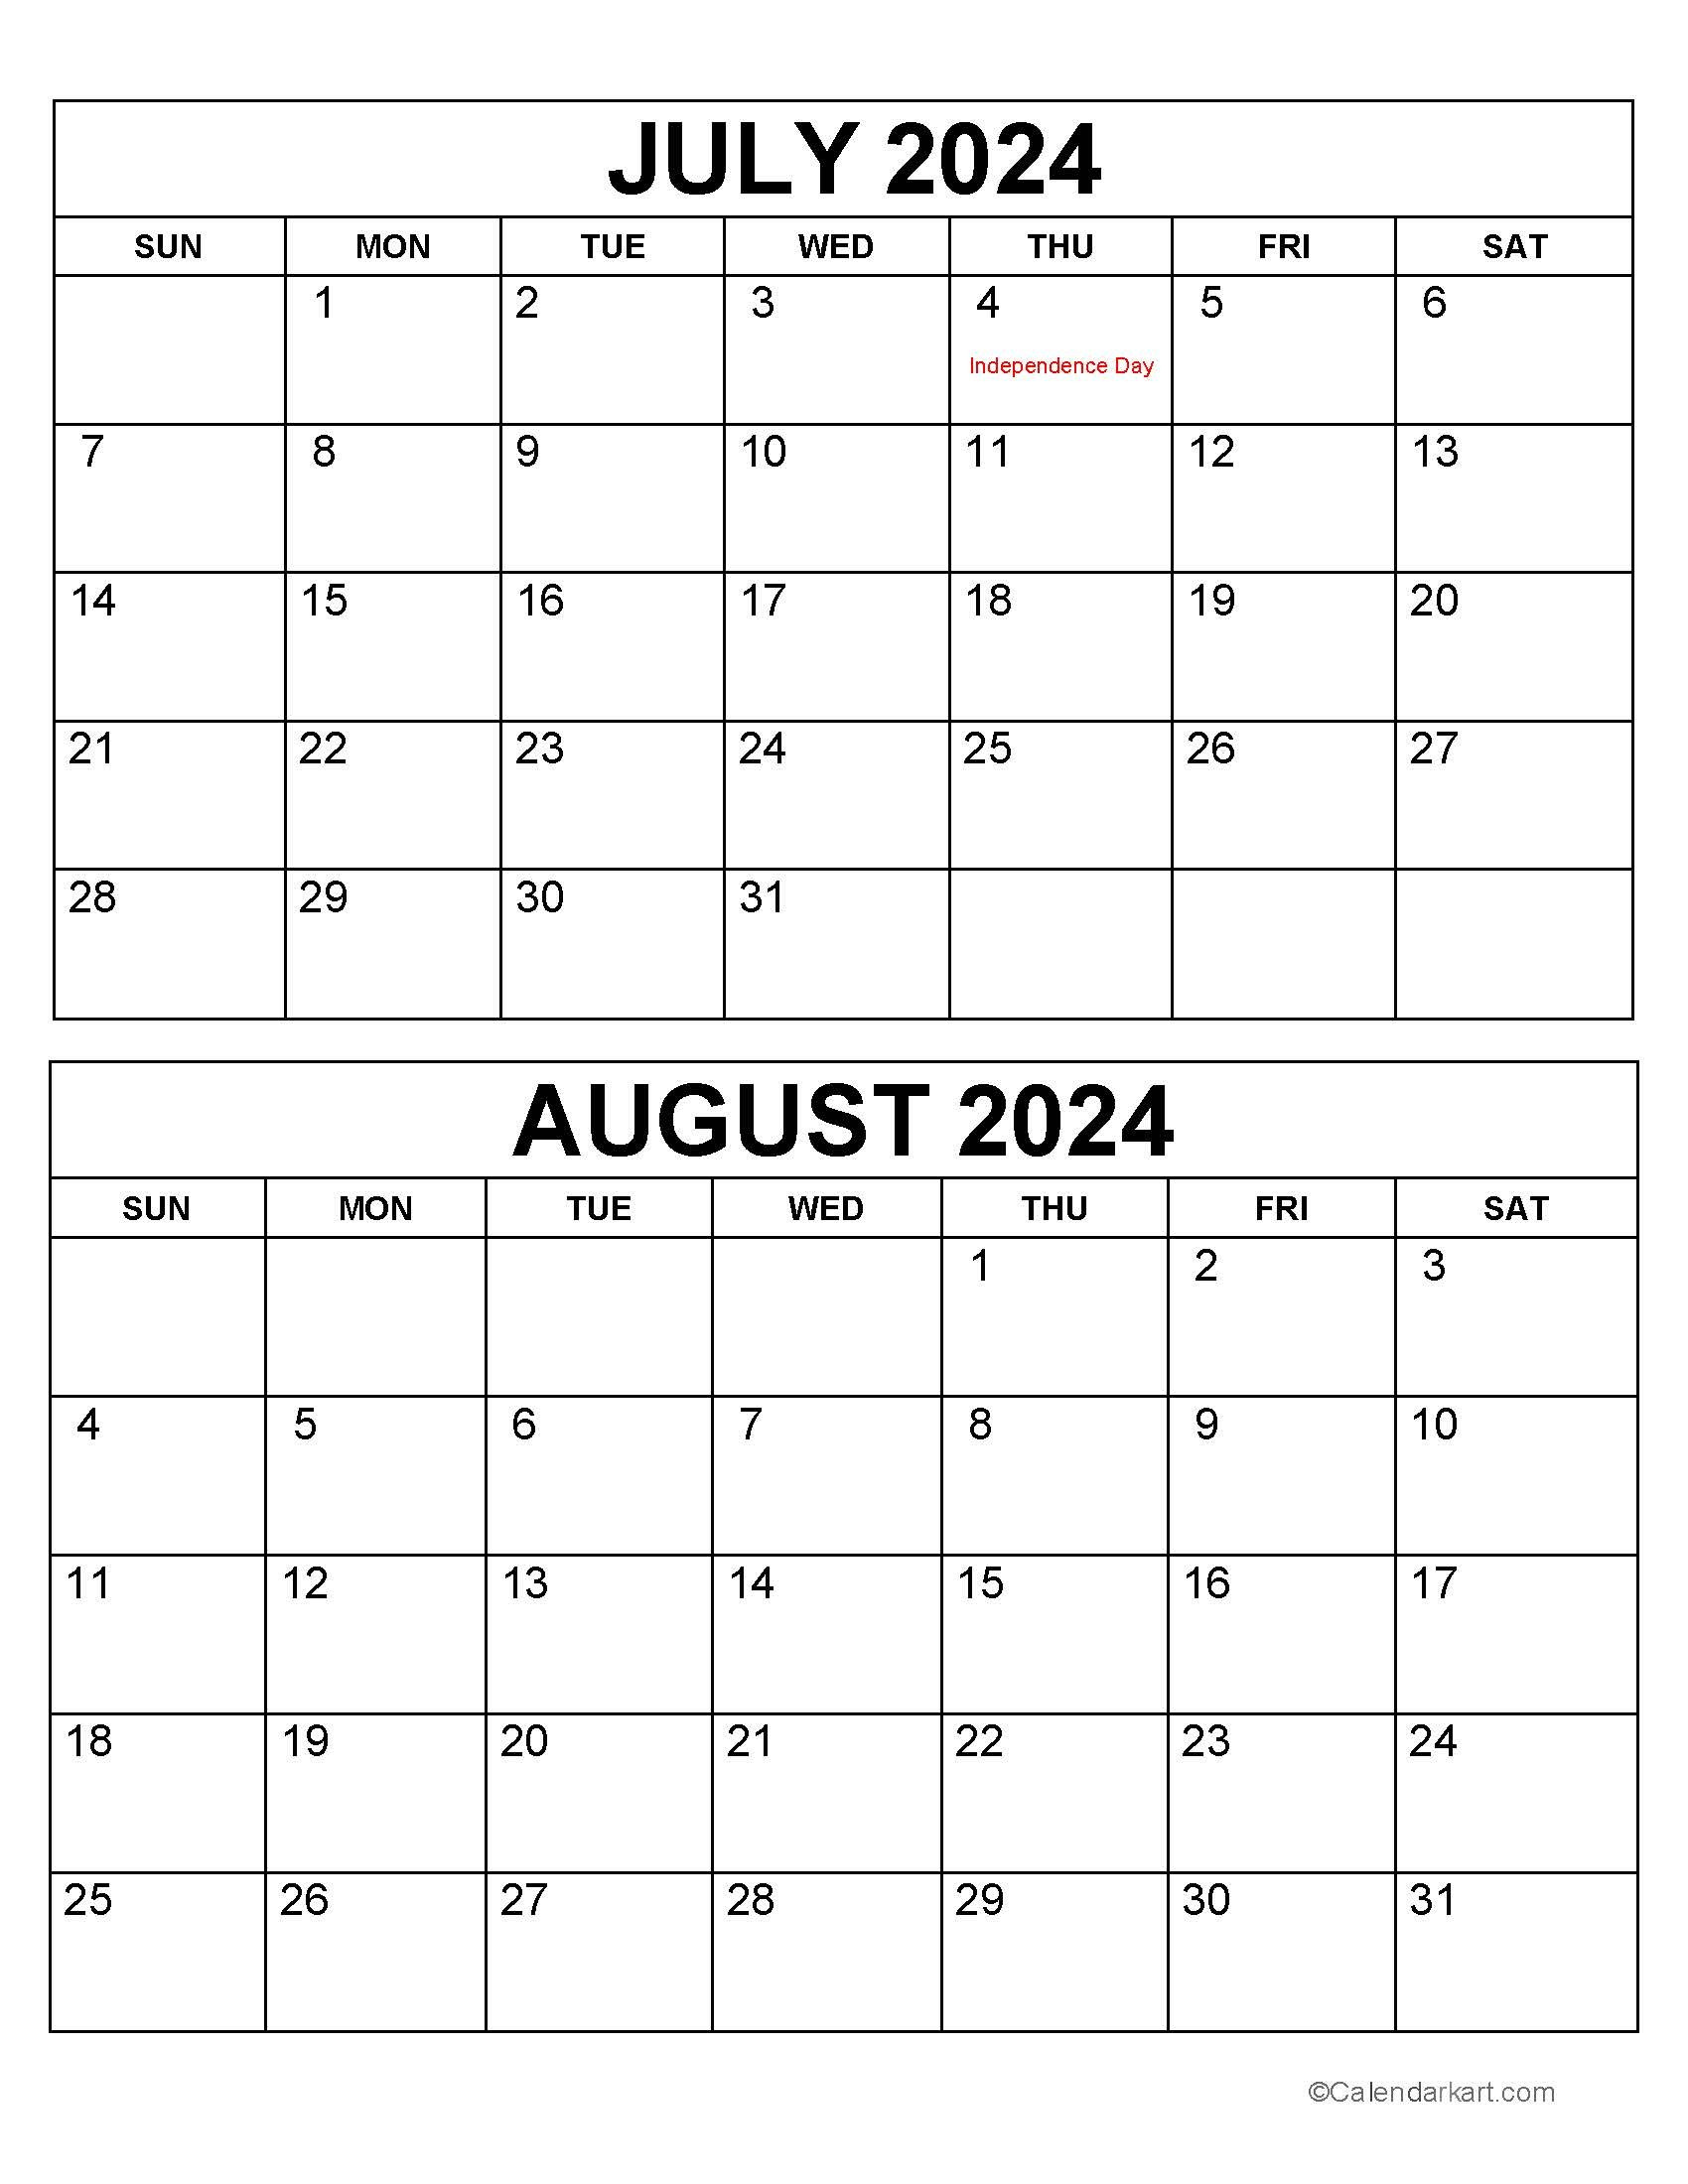 Printable July August 2024 Calendar | Calendarkart regarding Calendar Template July August 2024